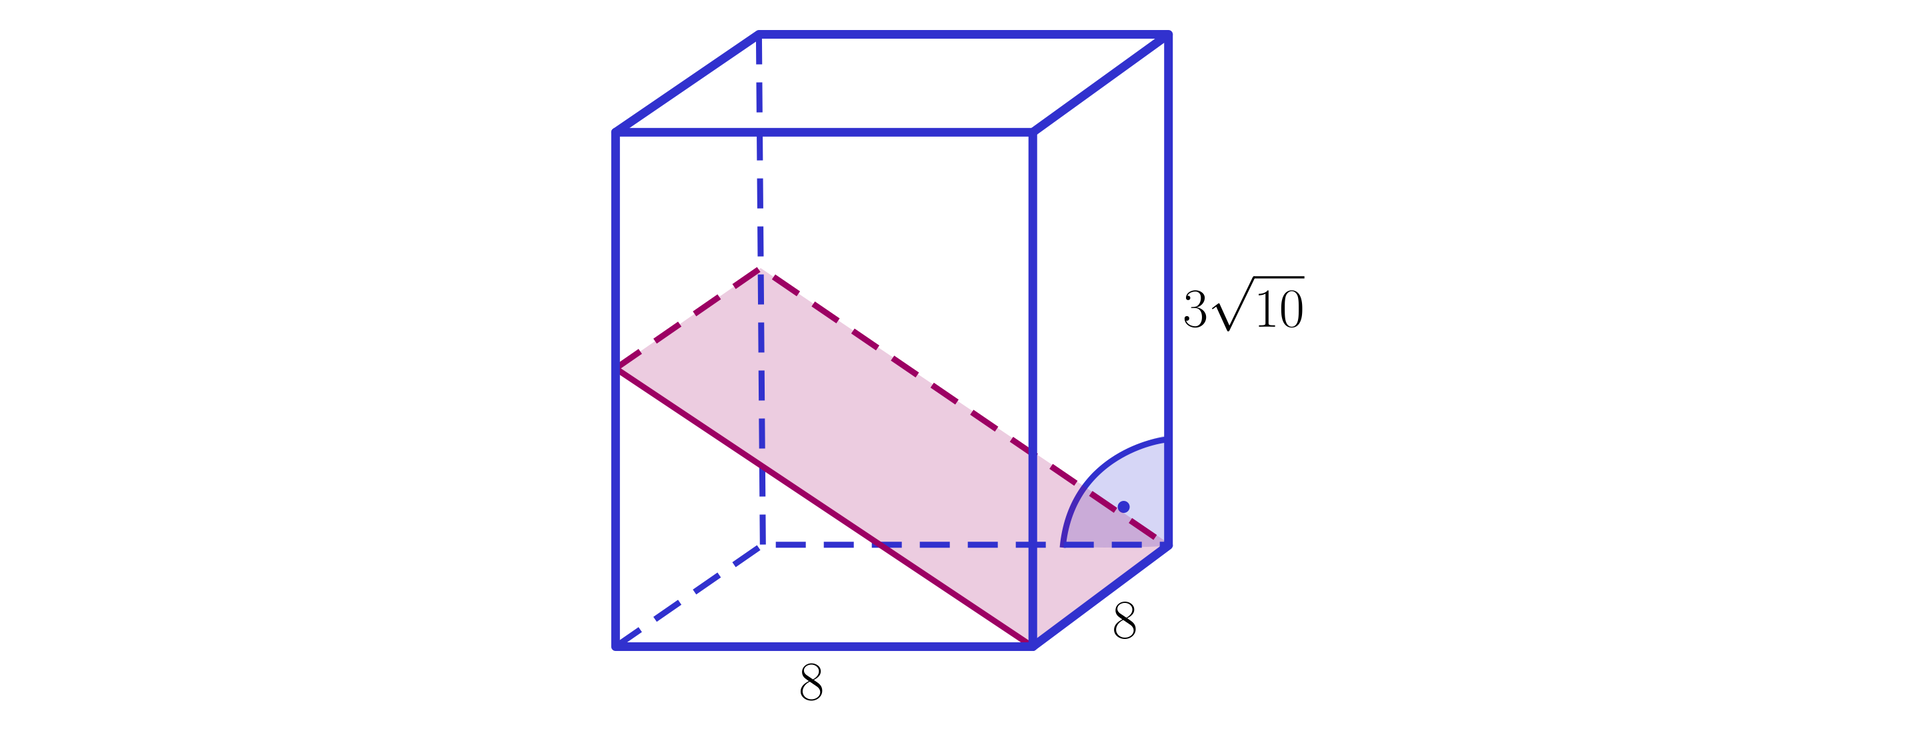 Na ilustracji przedstawiono graniastosłup prosty o podstawie kwadratu. Długości krawędzi podstawy wynoszą osiem, natomiast długość krawędzi bocznej wynosi 310. Zaznaczono przekrój graniastosłupa, którego płaszczyznę stanowi prostokąt, którego jedna para boków jest równa długości krawędzi podstawy, natomiast drugą parę boków stanowią odcinki, których długość jest równa długości przeciwprostokątnej trójkąta prostokątnego o przyprostokątnych 8 i 3102.